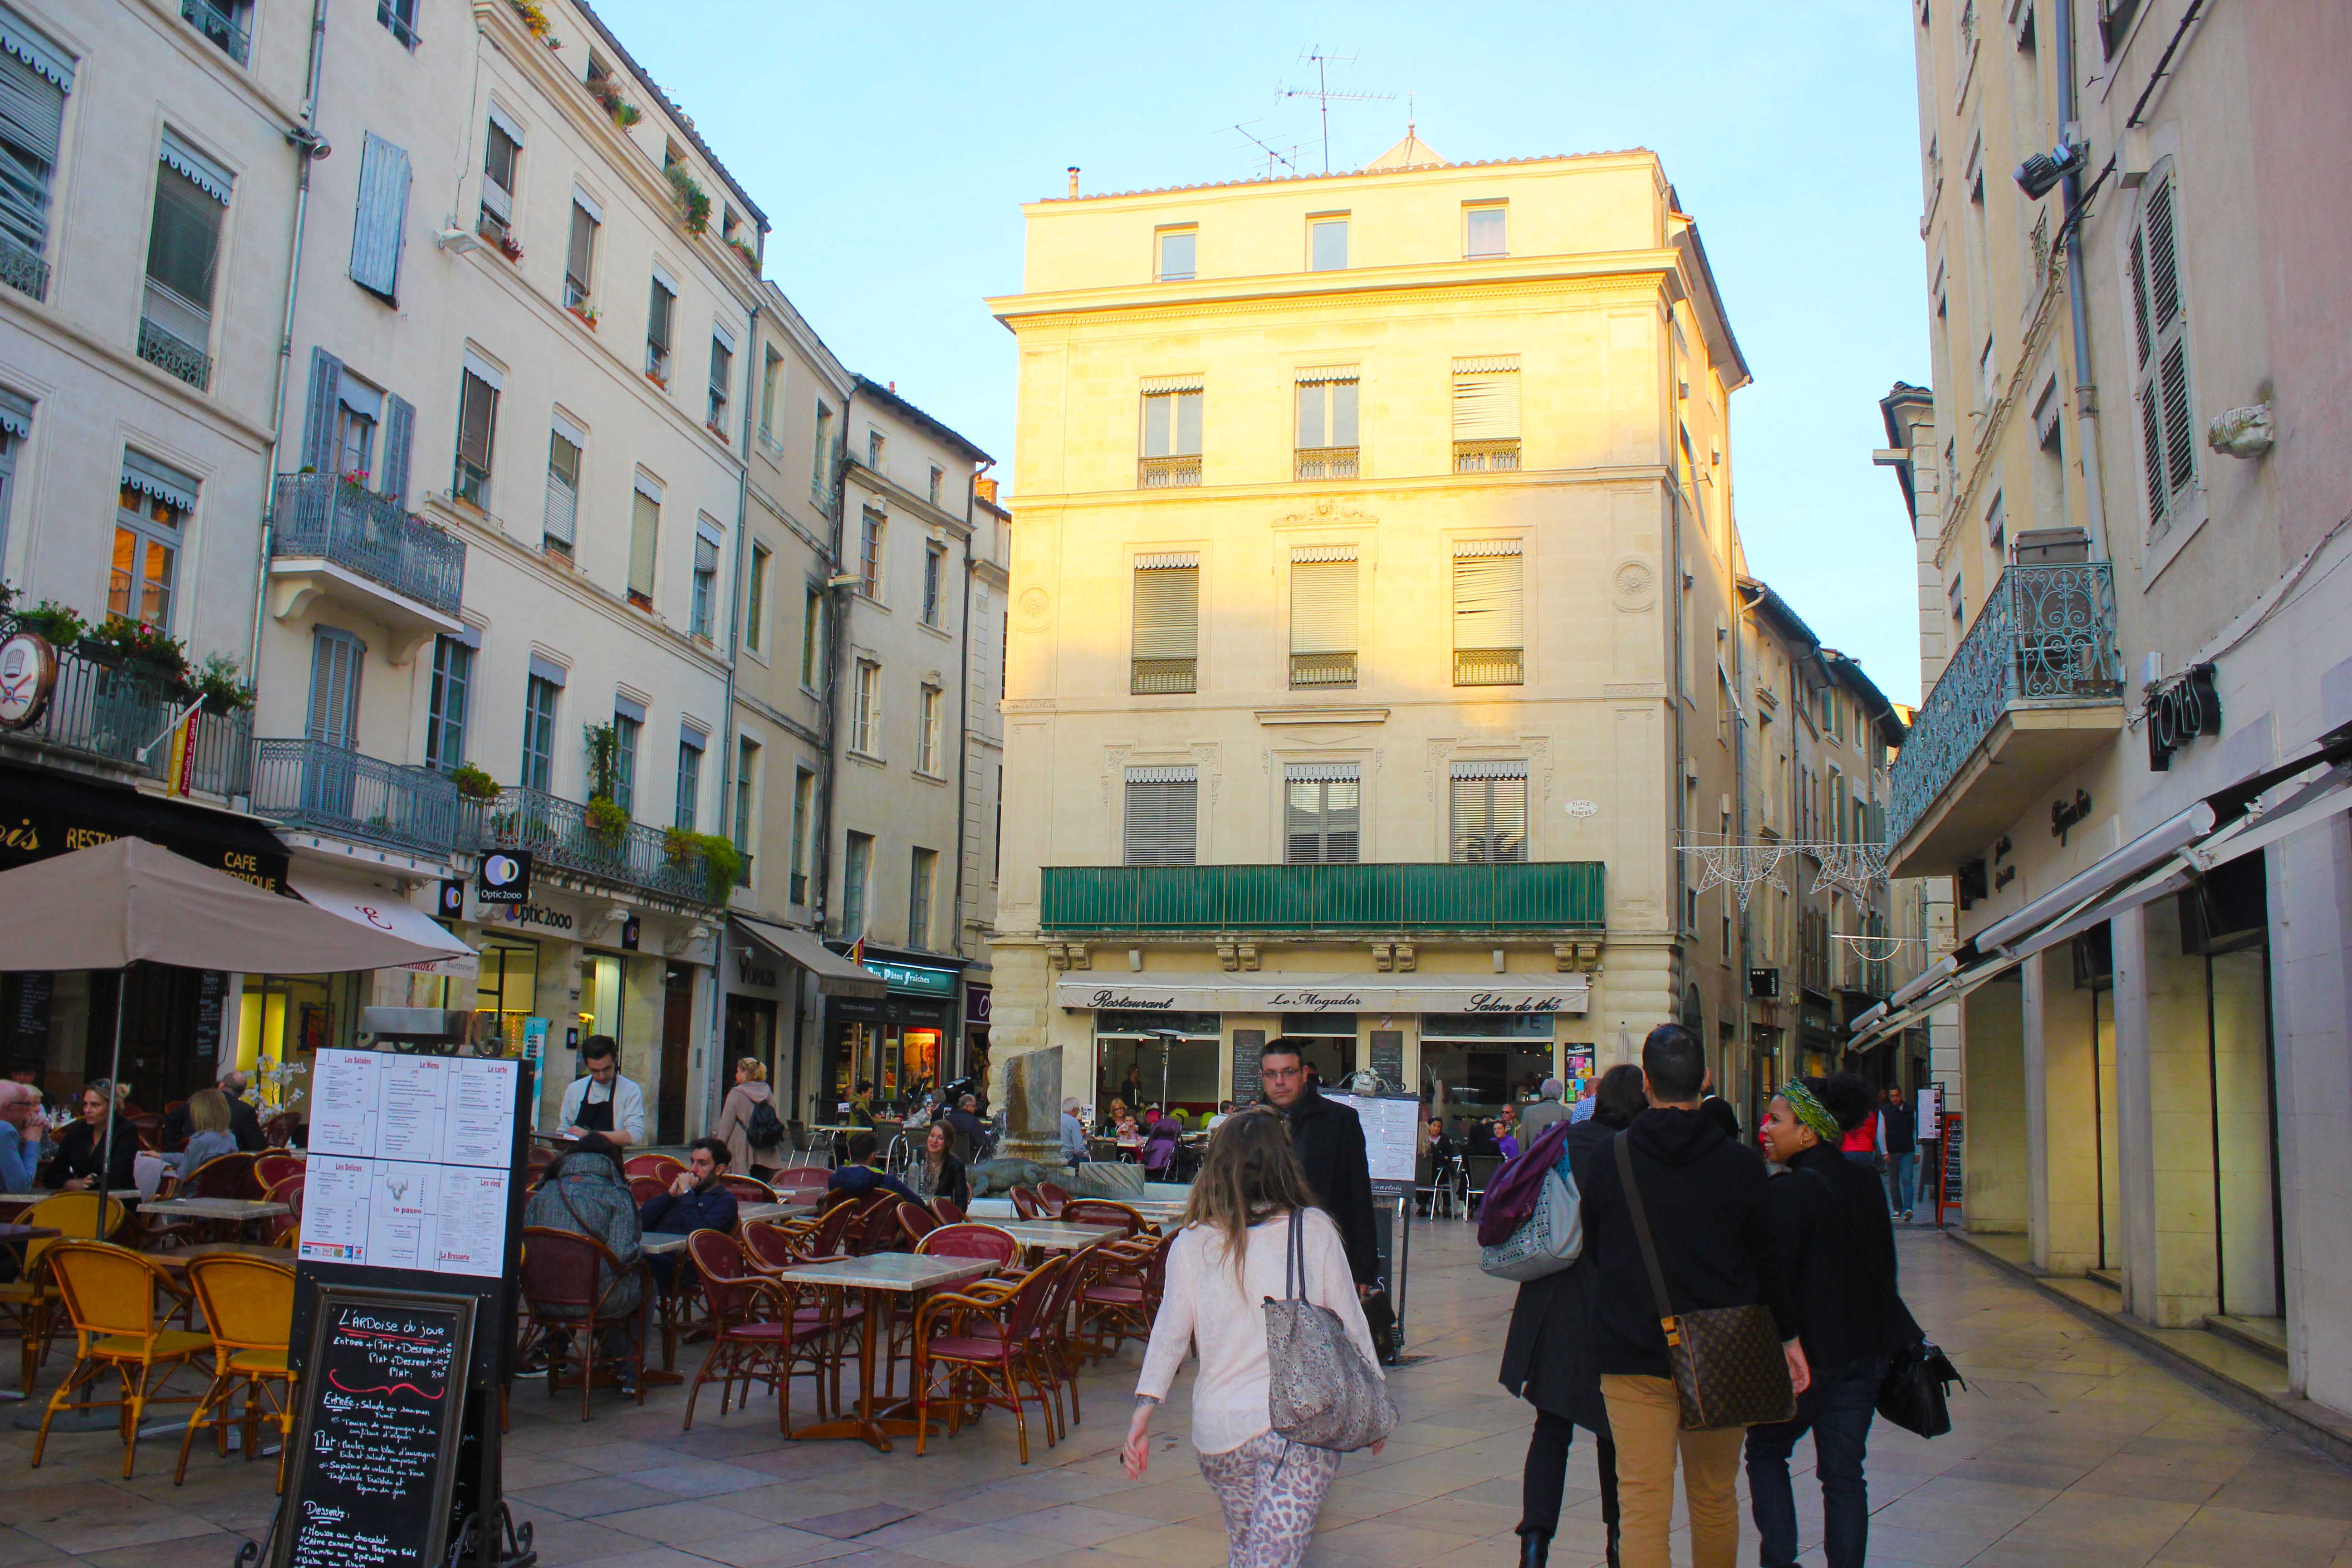 Em Nimes, os restaurantes e bares tomam conta das calçadas. Ali tem quase que de tudo